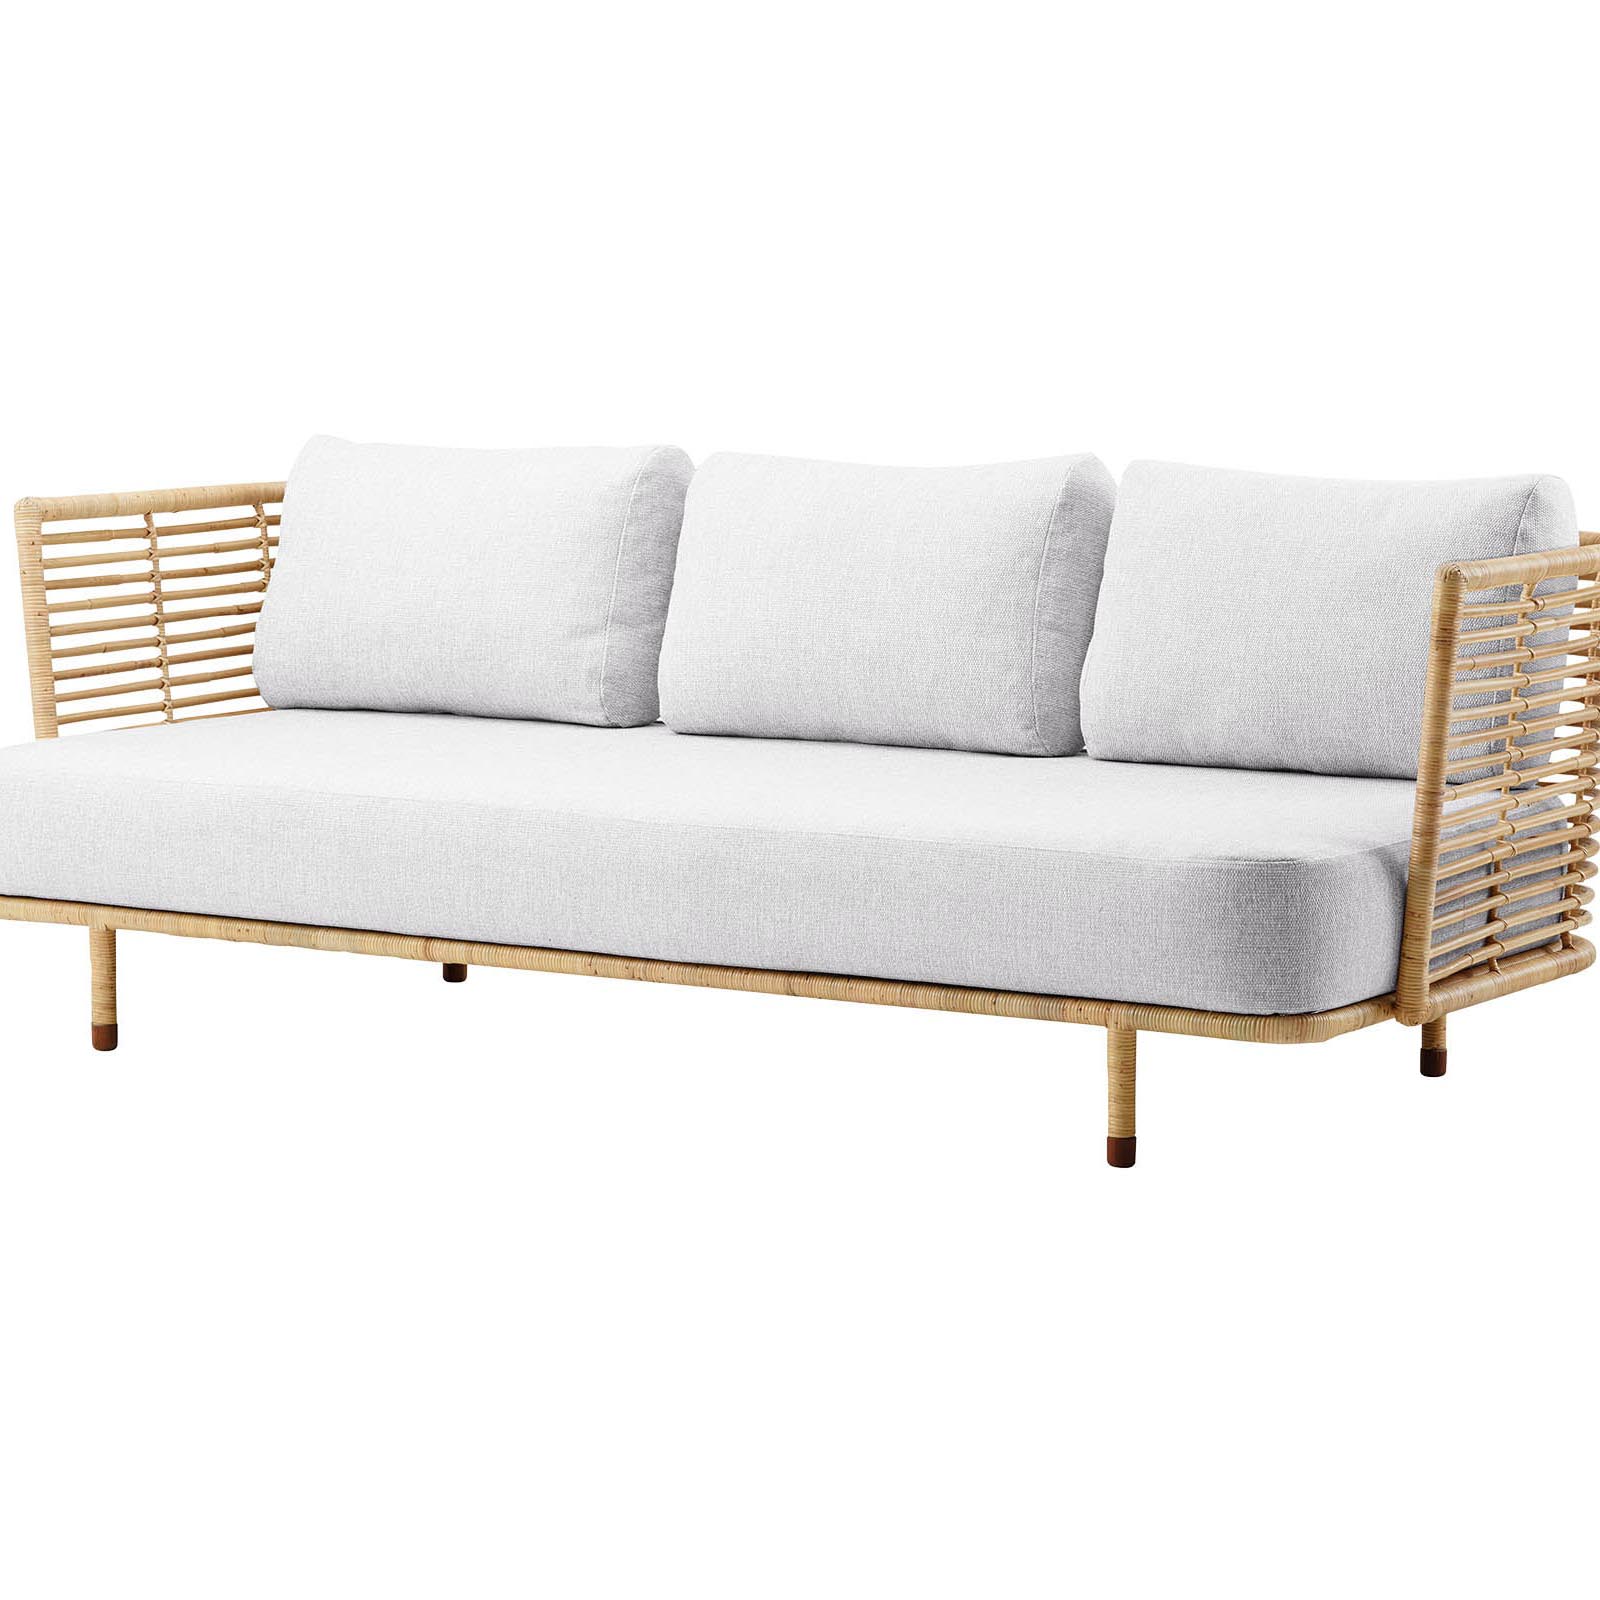 Sense 3-Sitzer Sofa aus Rattan in Natural mit Kissen aus Cane-line Natté in White